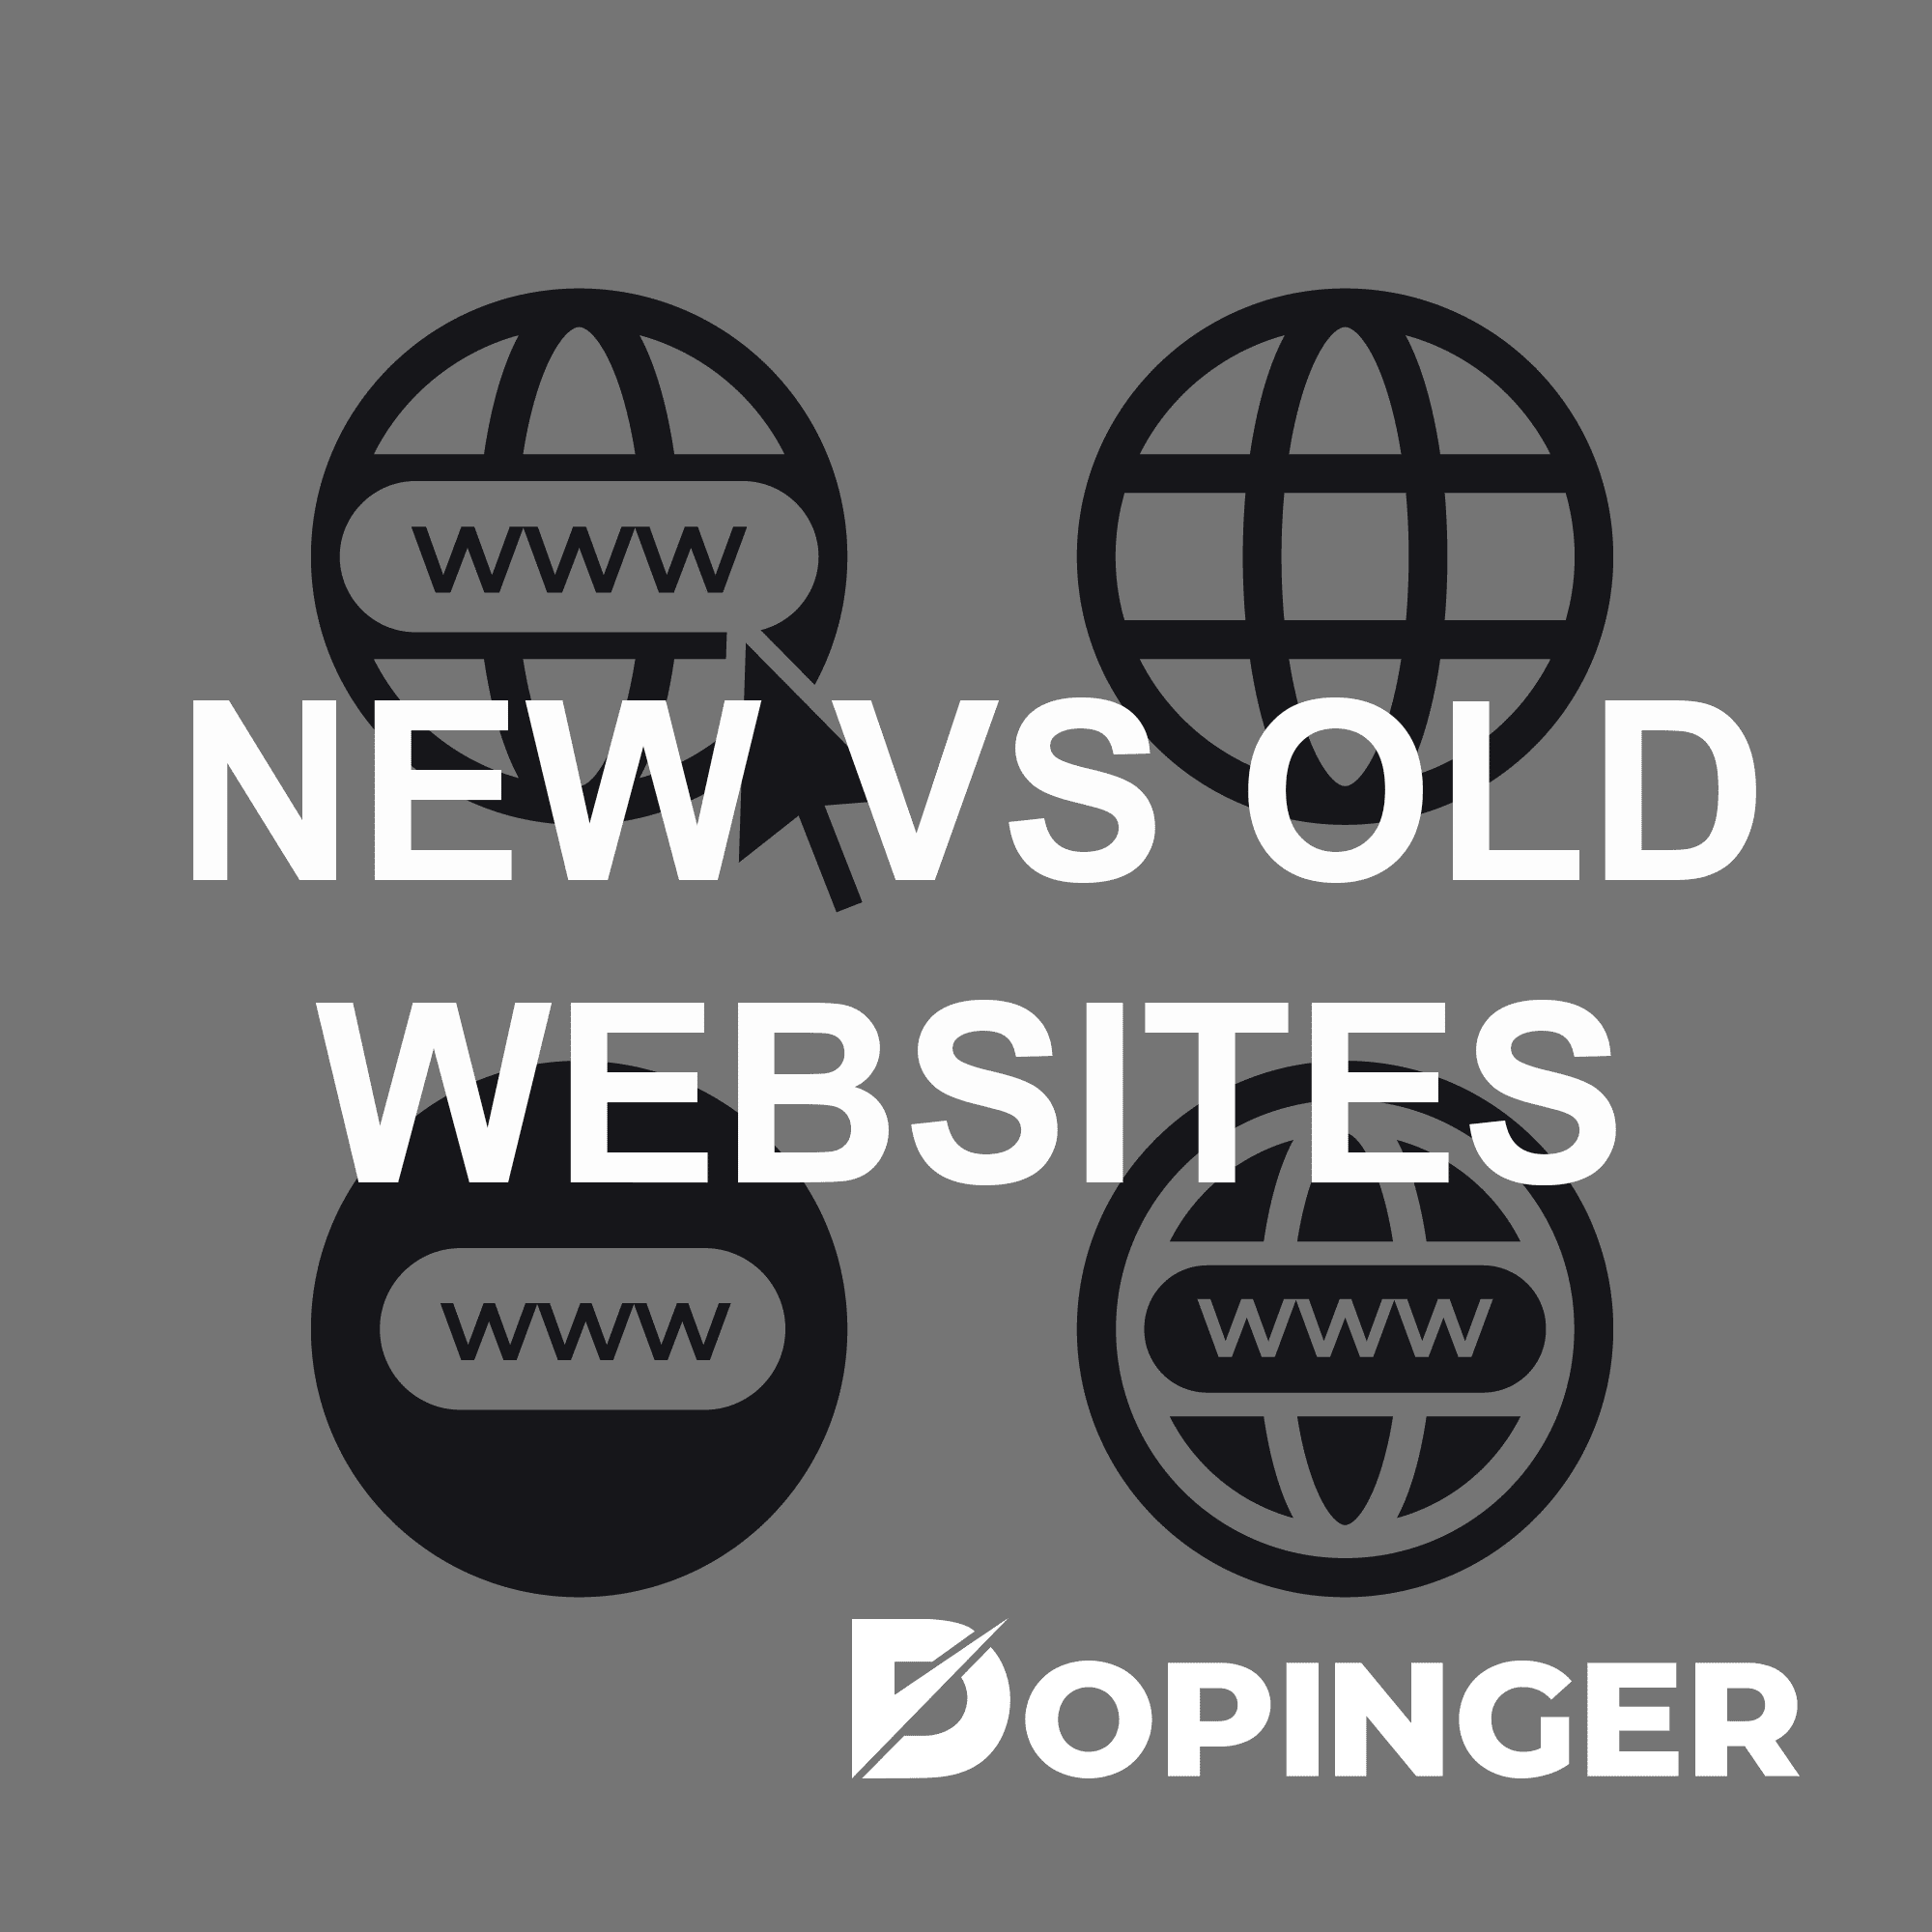 new vs old websites in seo